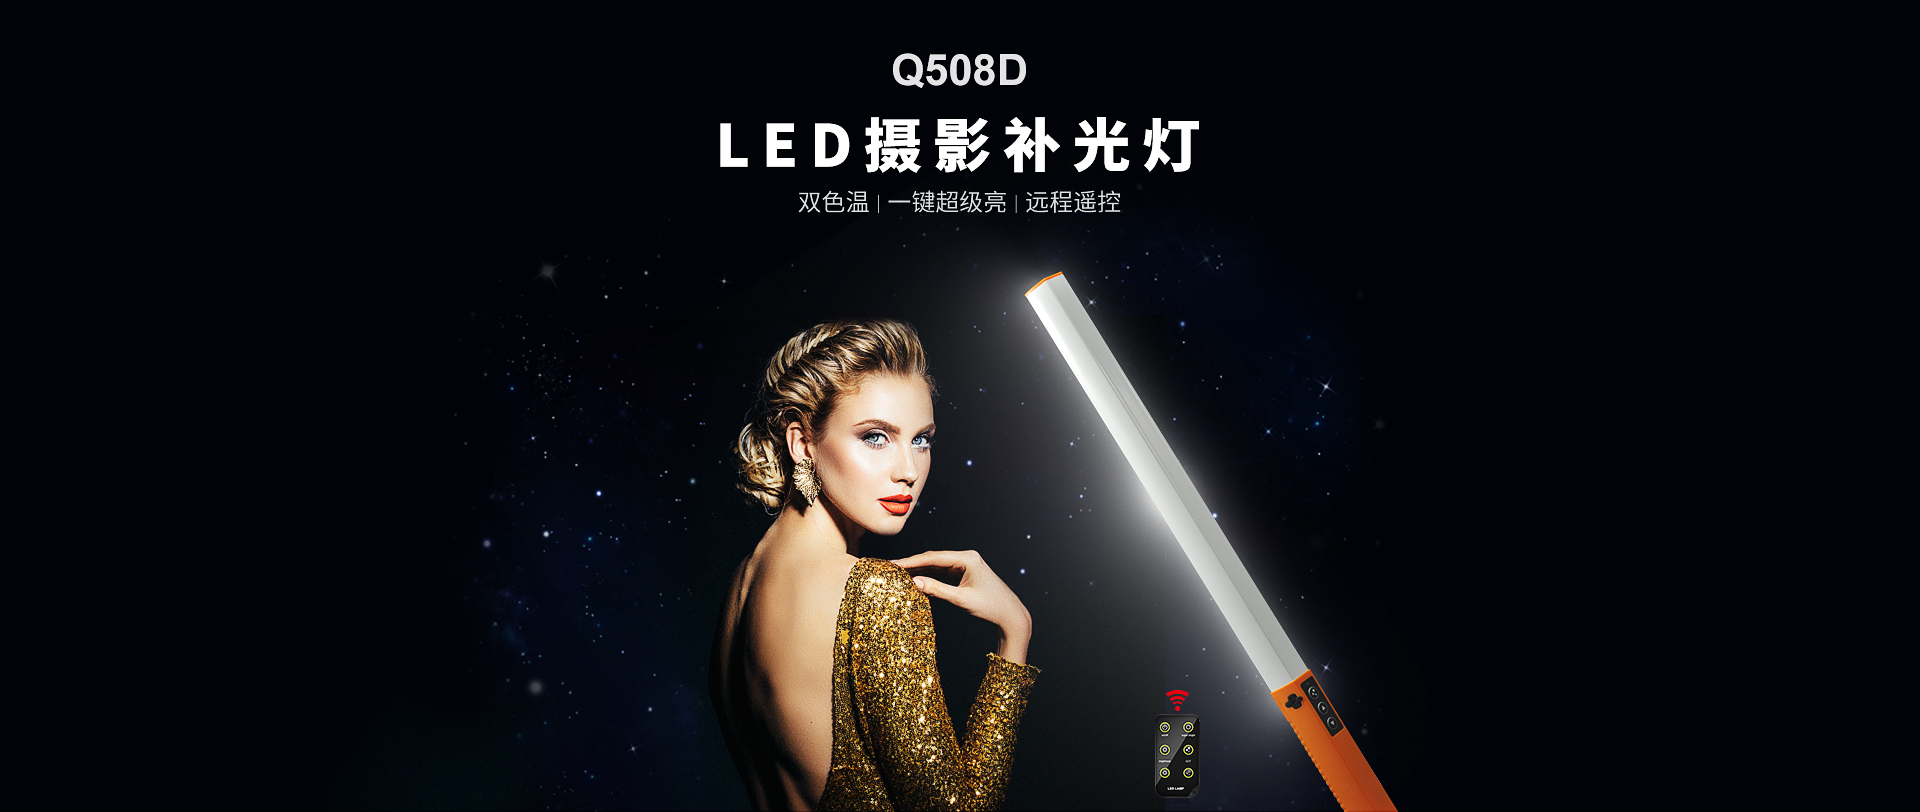 Q508D-LED摄影补光灯